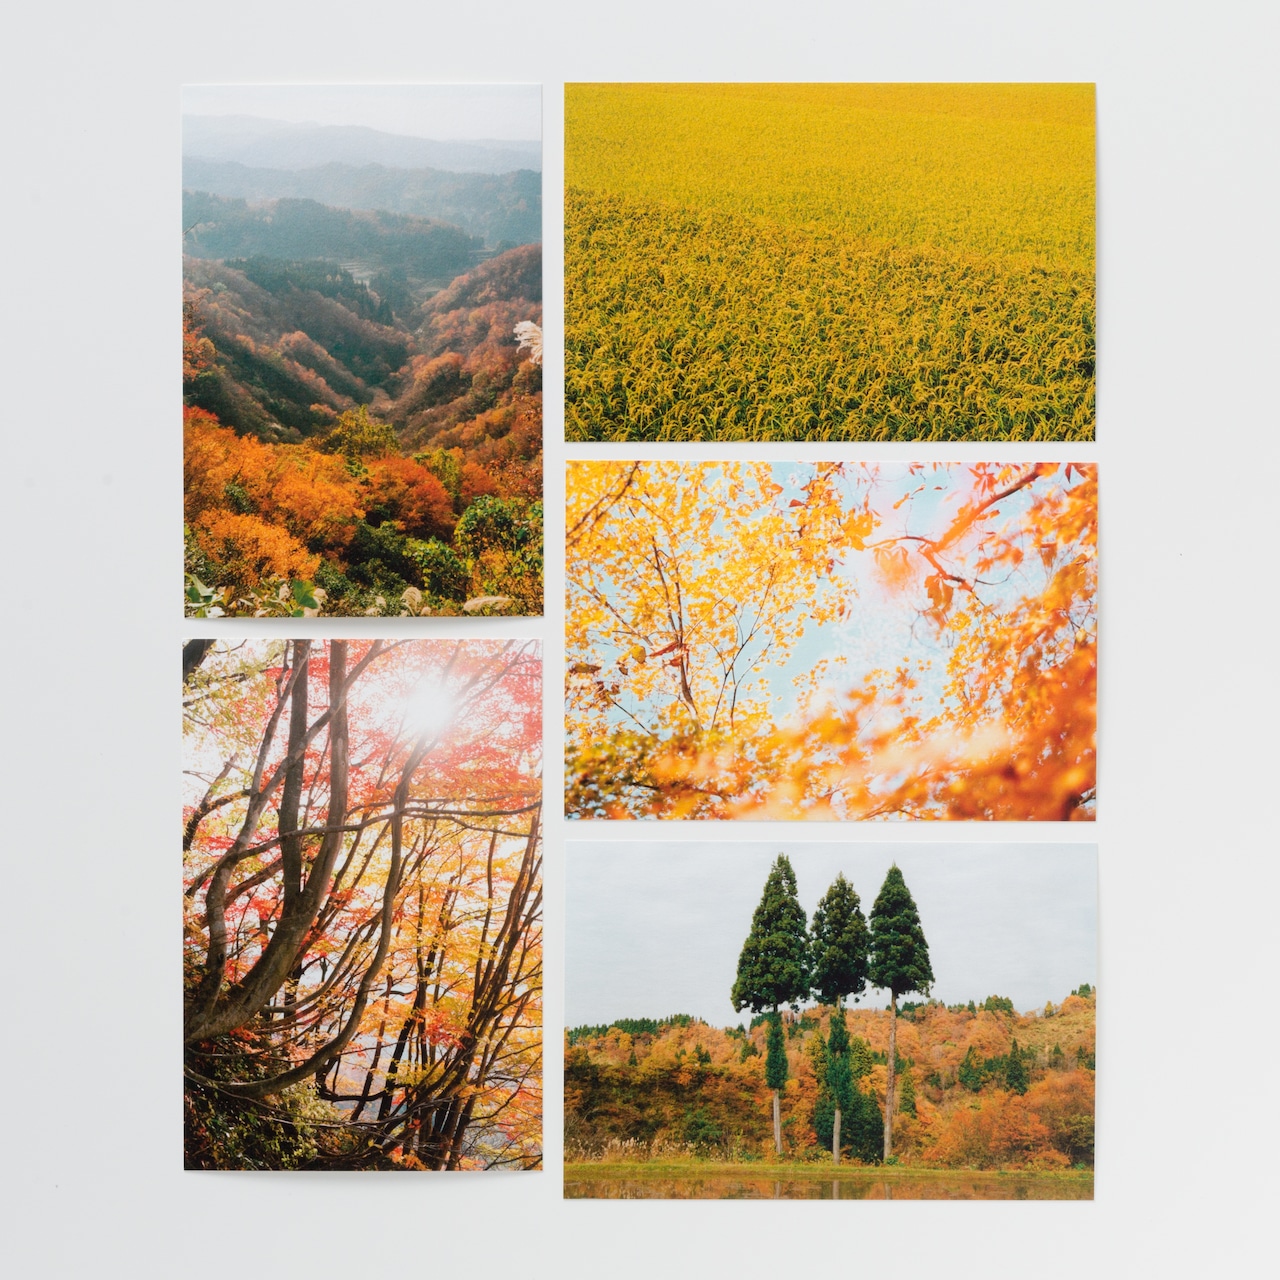 石川直樹 ポストカードセット〈秋〉/ Naoki Ishikawa Post Card Set (Autumn)